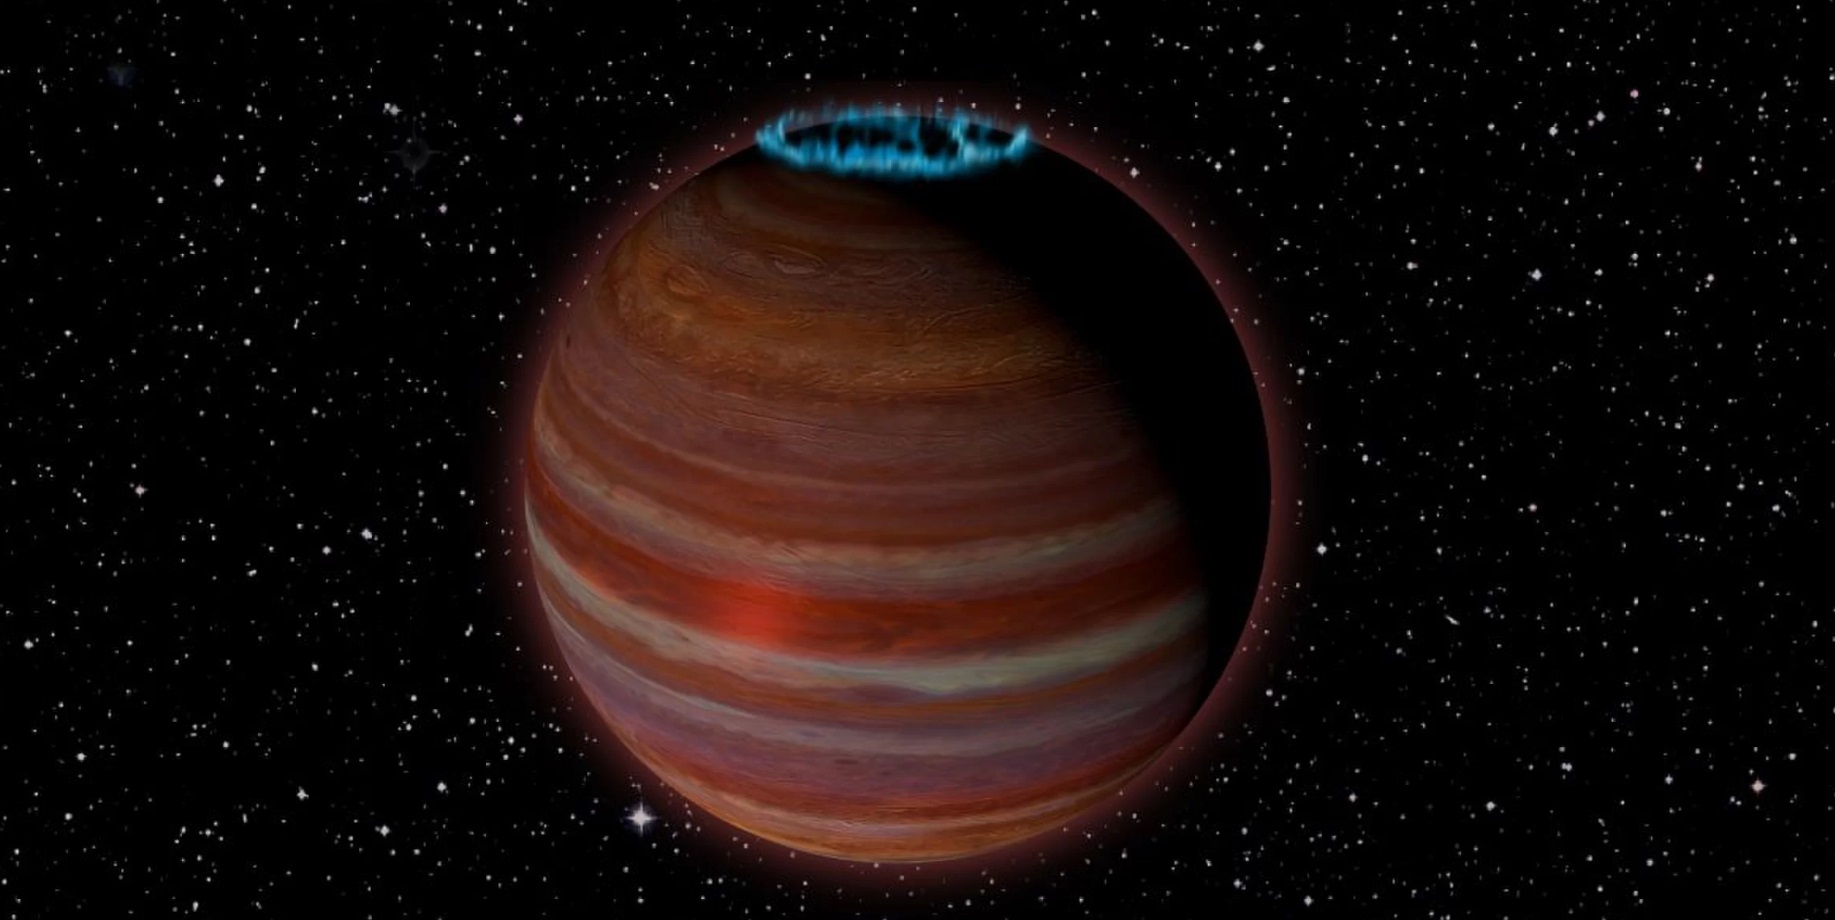 Takzvané nepoctivé planéty, ktoré gravitačnými silami odleteli od svojej materskej hviezdy a voľne plávajú galaxiou. Jedna zvláštnosť tohto typu je známa ako SIMP J01365663 + 0933473, objekt veľkosti planéty vzdialený 200 svetelných rokov, ktorého magnetické pole je viac ako 200-krát silnejšie ako má Jupiter. Je dostatočne silné, aby generovalo blikajúce polárne žiary vo svojej atmosfére, čo možno vidieť pri rádiových teleskopoch.